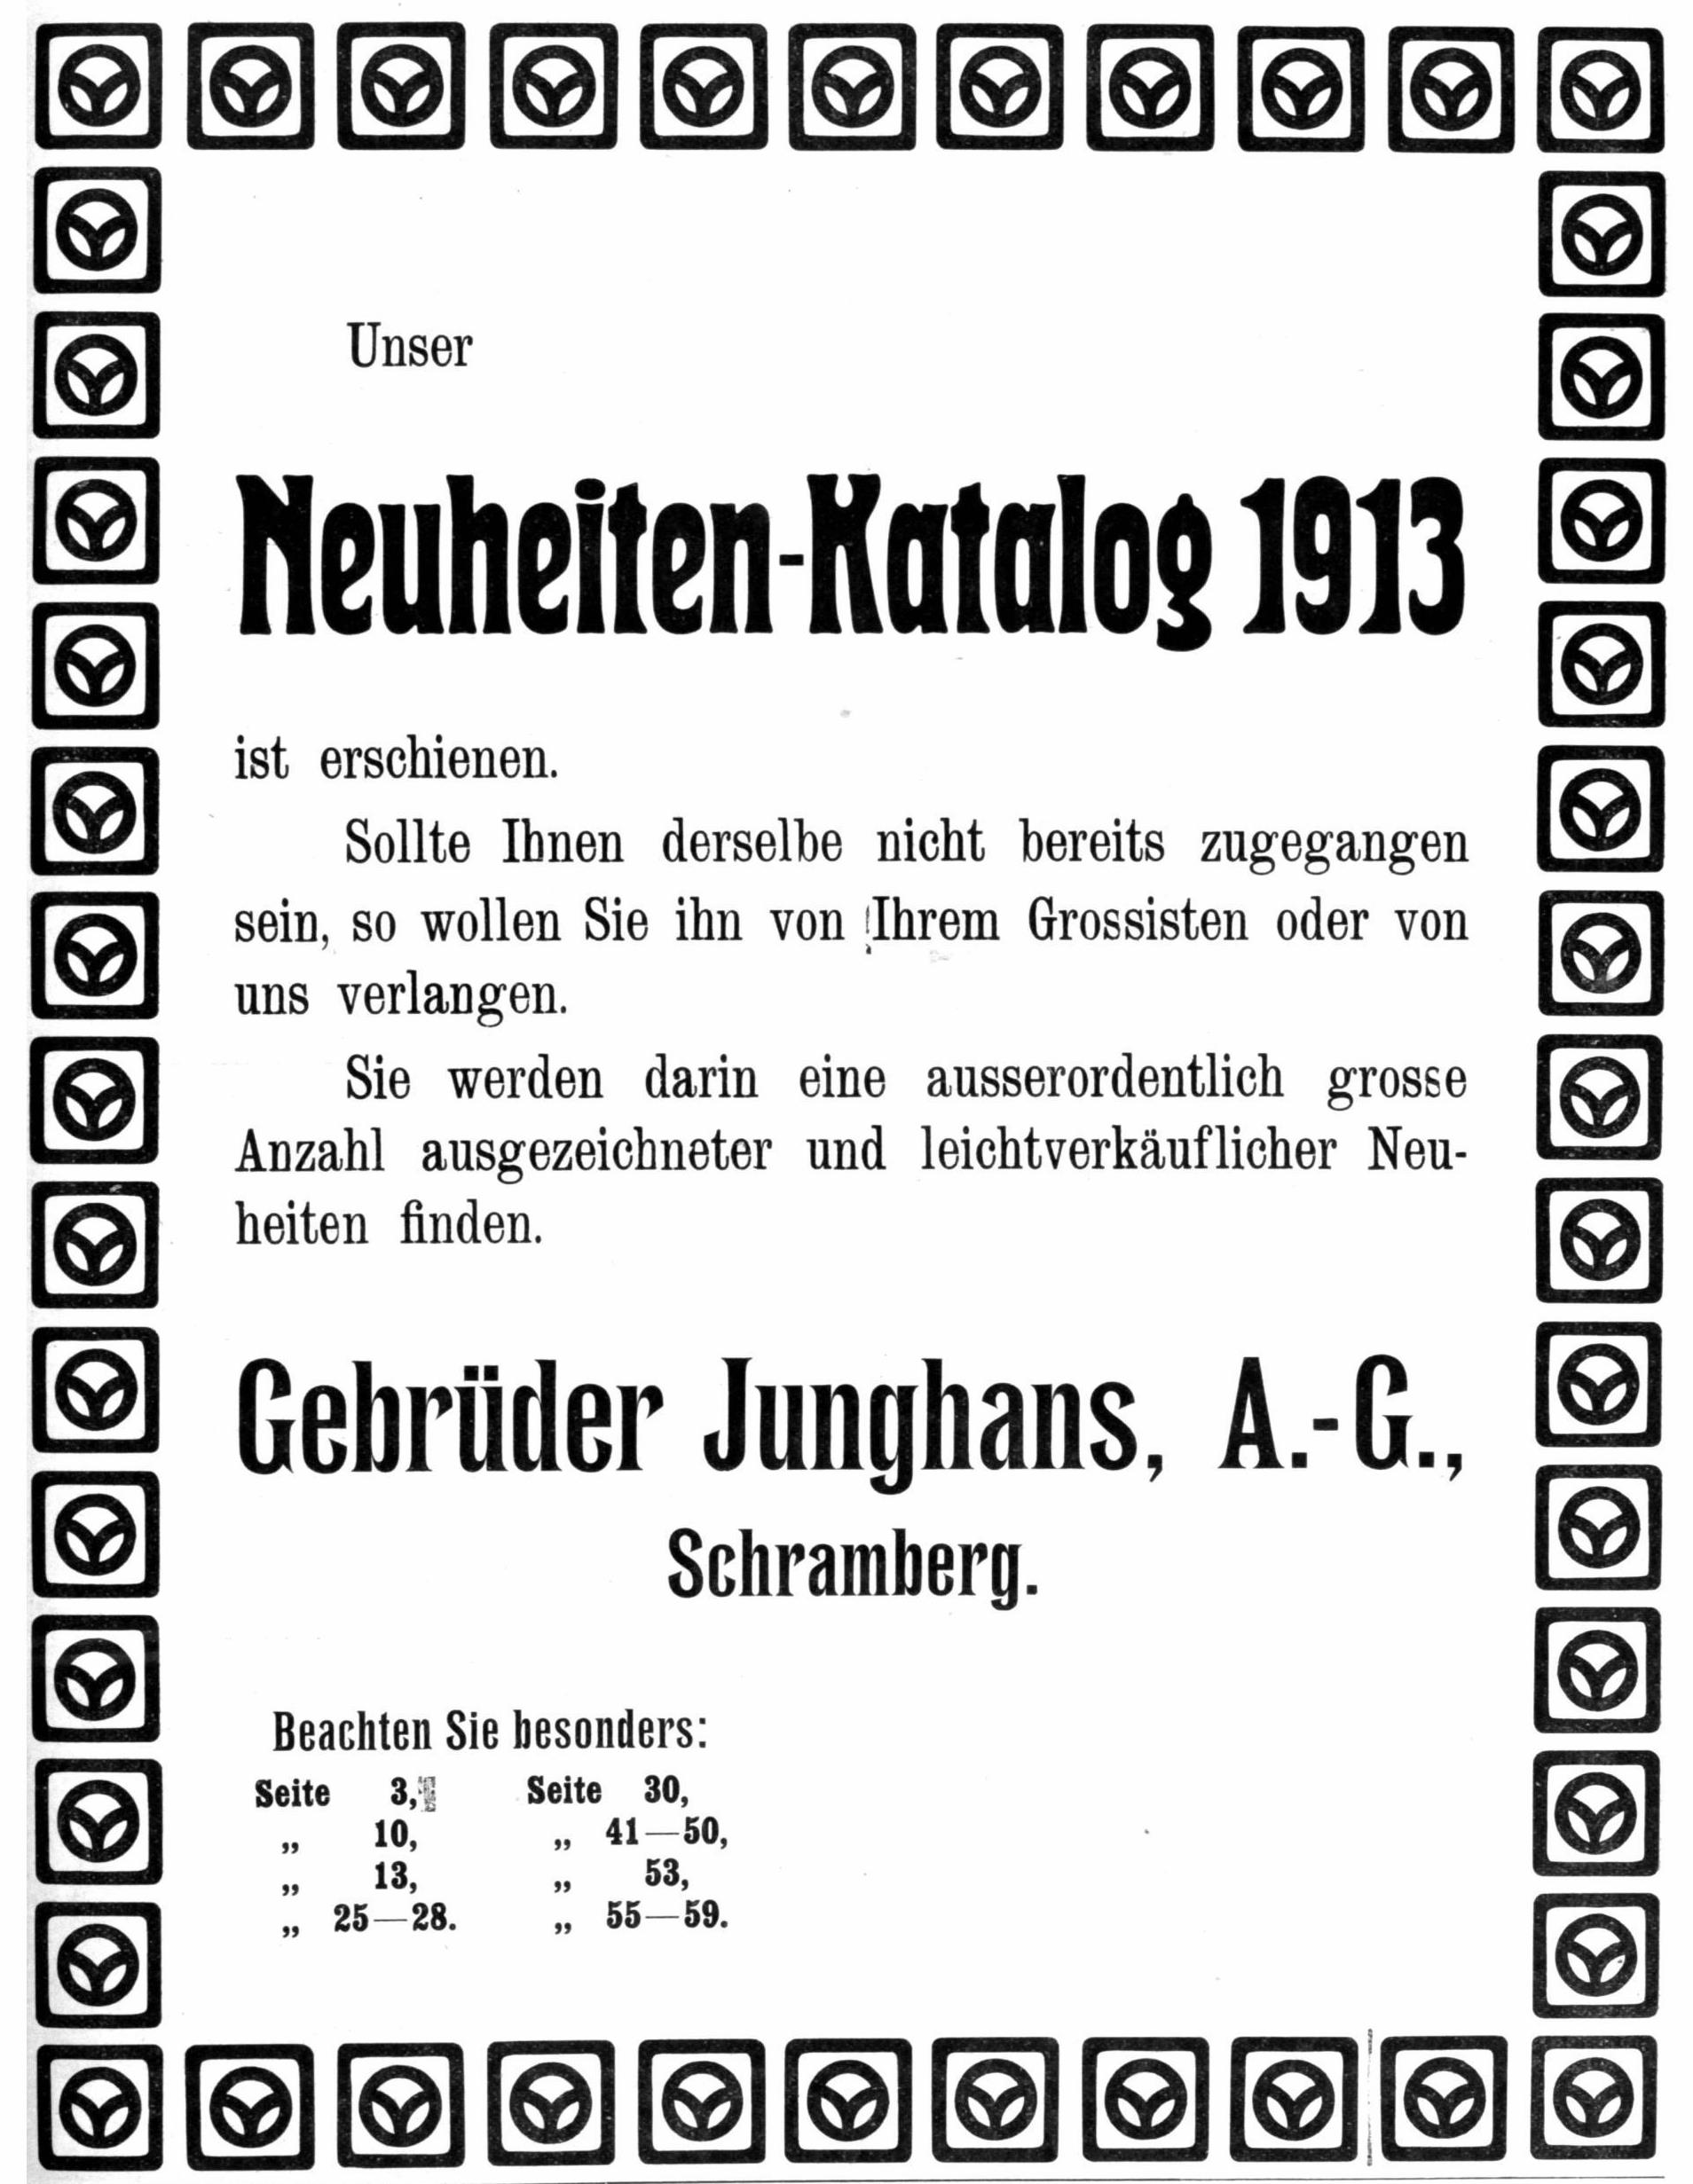 Junghans 1913 12.jpg